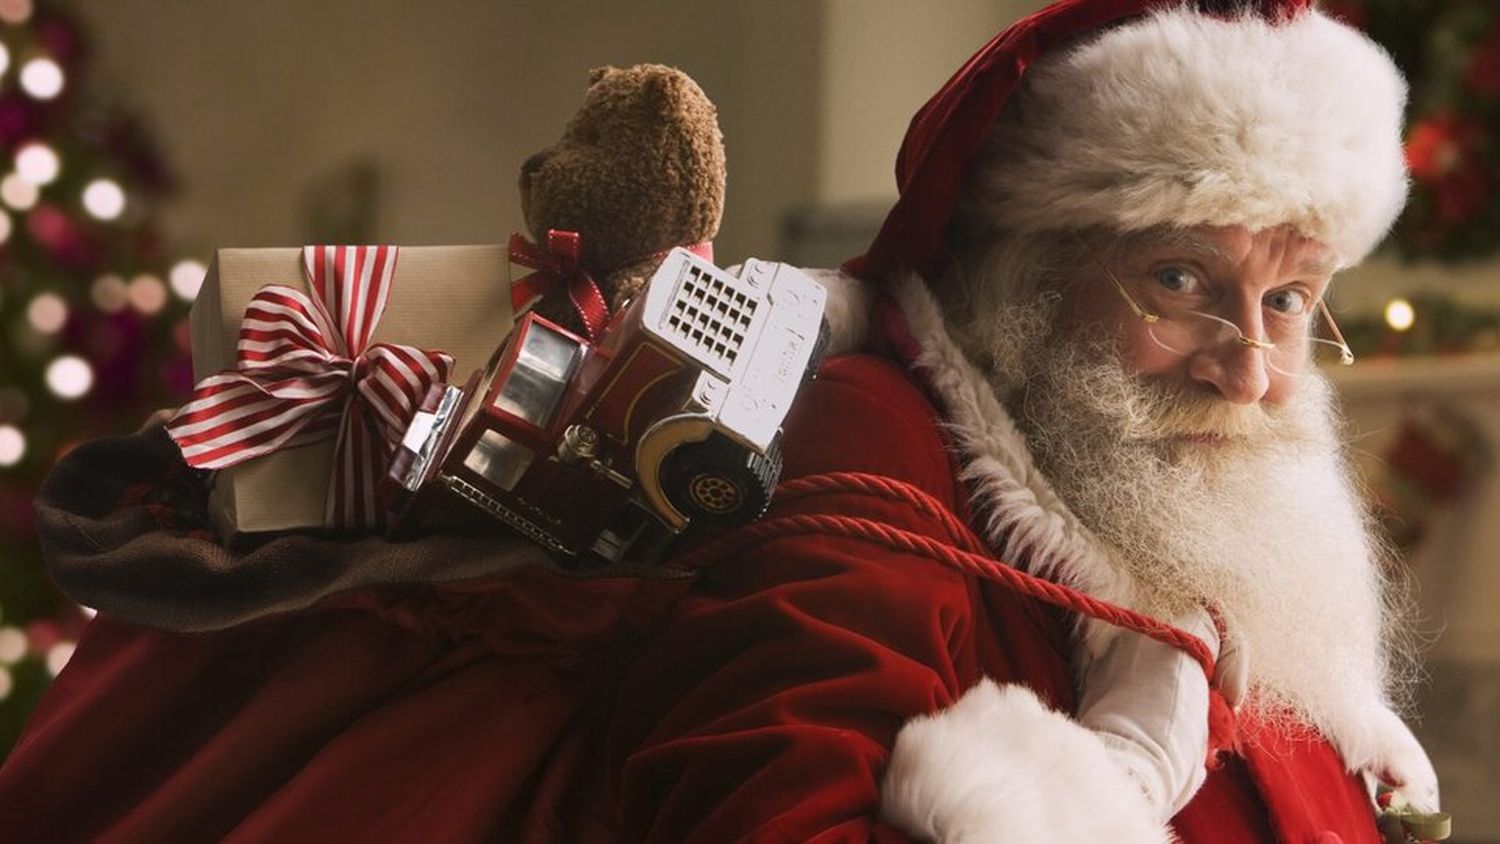 Respuesta a la pregunta que todo padre teme en época de Navidad y reyes: ¿Papá Noel existe?